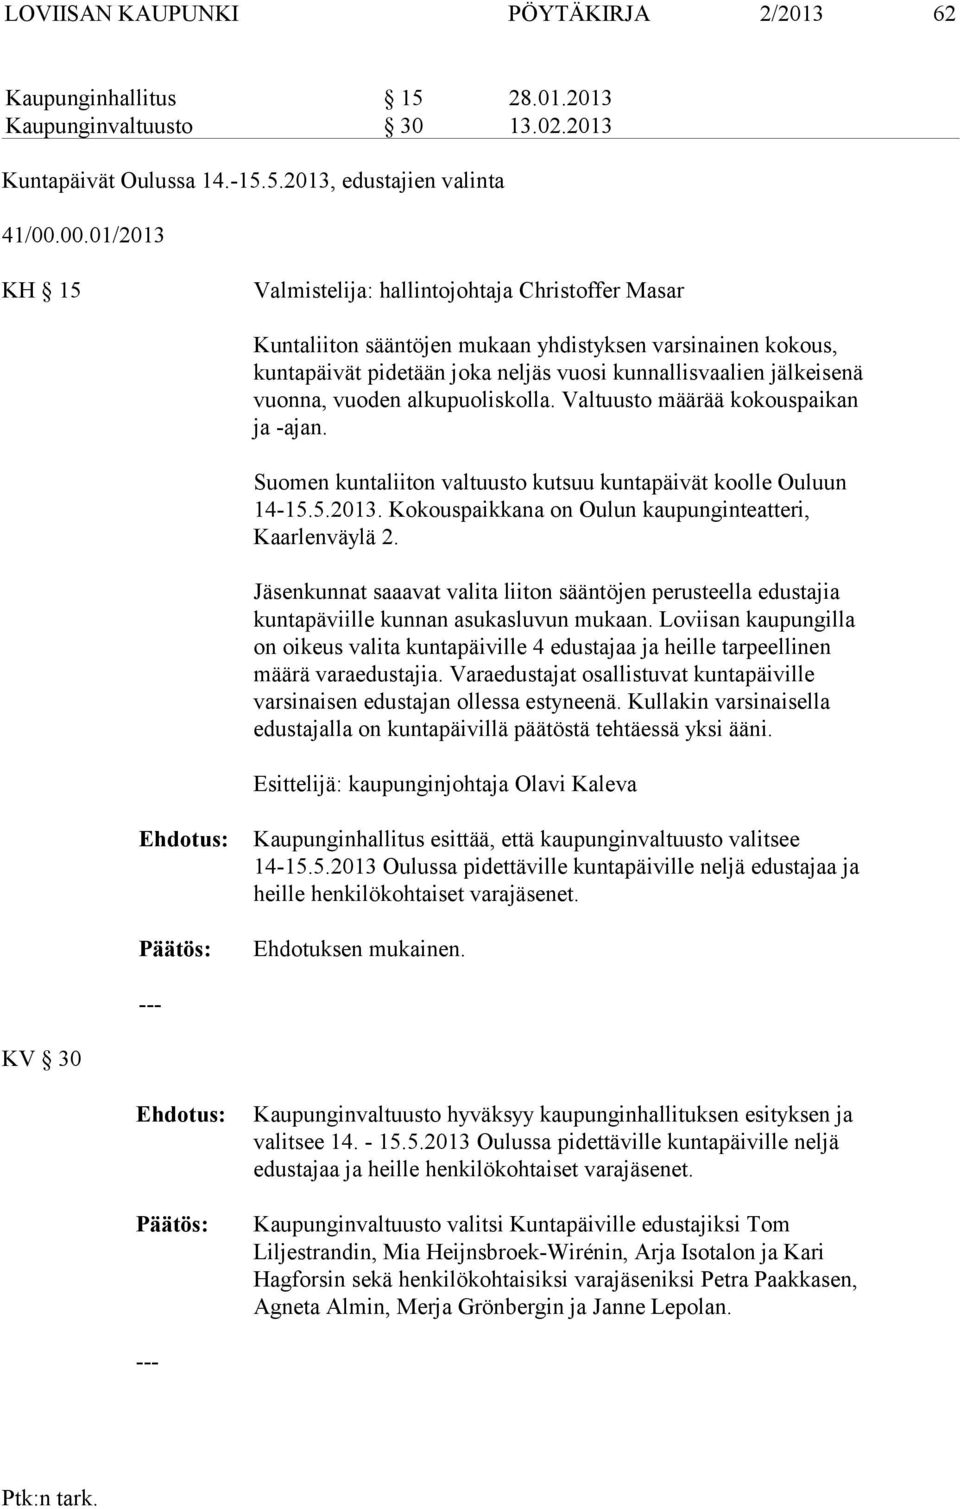 vuonna, vuoden alkupuoliskolla. Valtuusto määrää kokouspaikan ja -ajan. Suomen kuntaliiton valtuusto kutsuu kuntapäivät koolle Ouluun 14-15.5.2013.